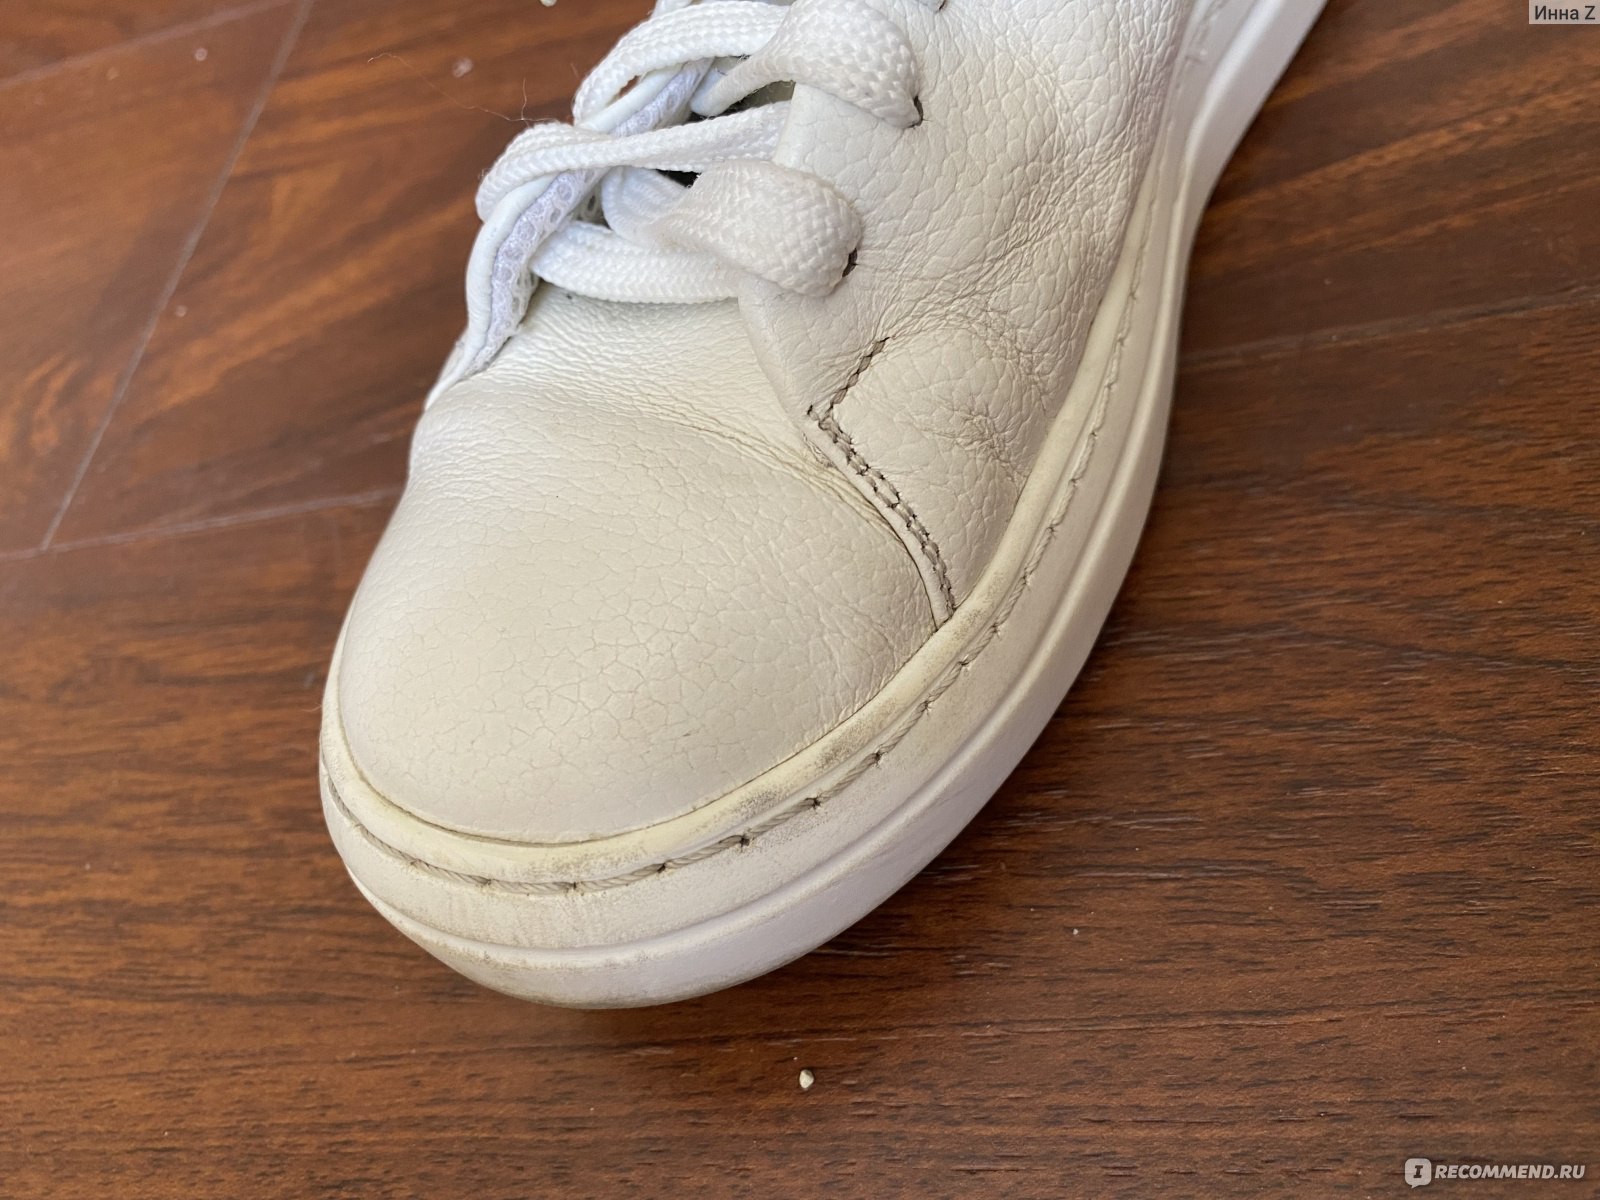 Отбелить подошву кроссовок от желтизны в домашних. Отбелить кроссовки. Отбеливатель для белой обуви. Отбелить кроссовки белые в домашних условиях быстро. Как отбелить кроссовки белые сетчатые.